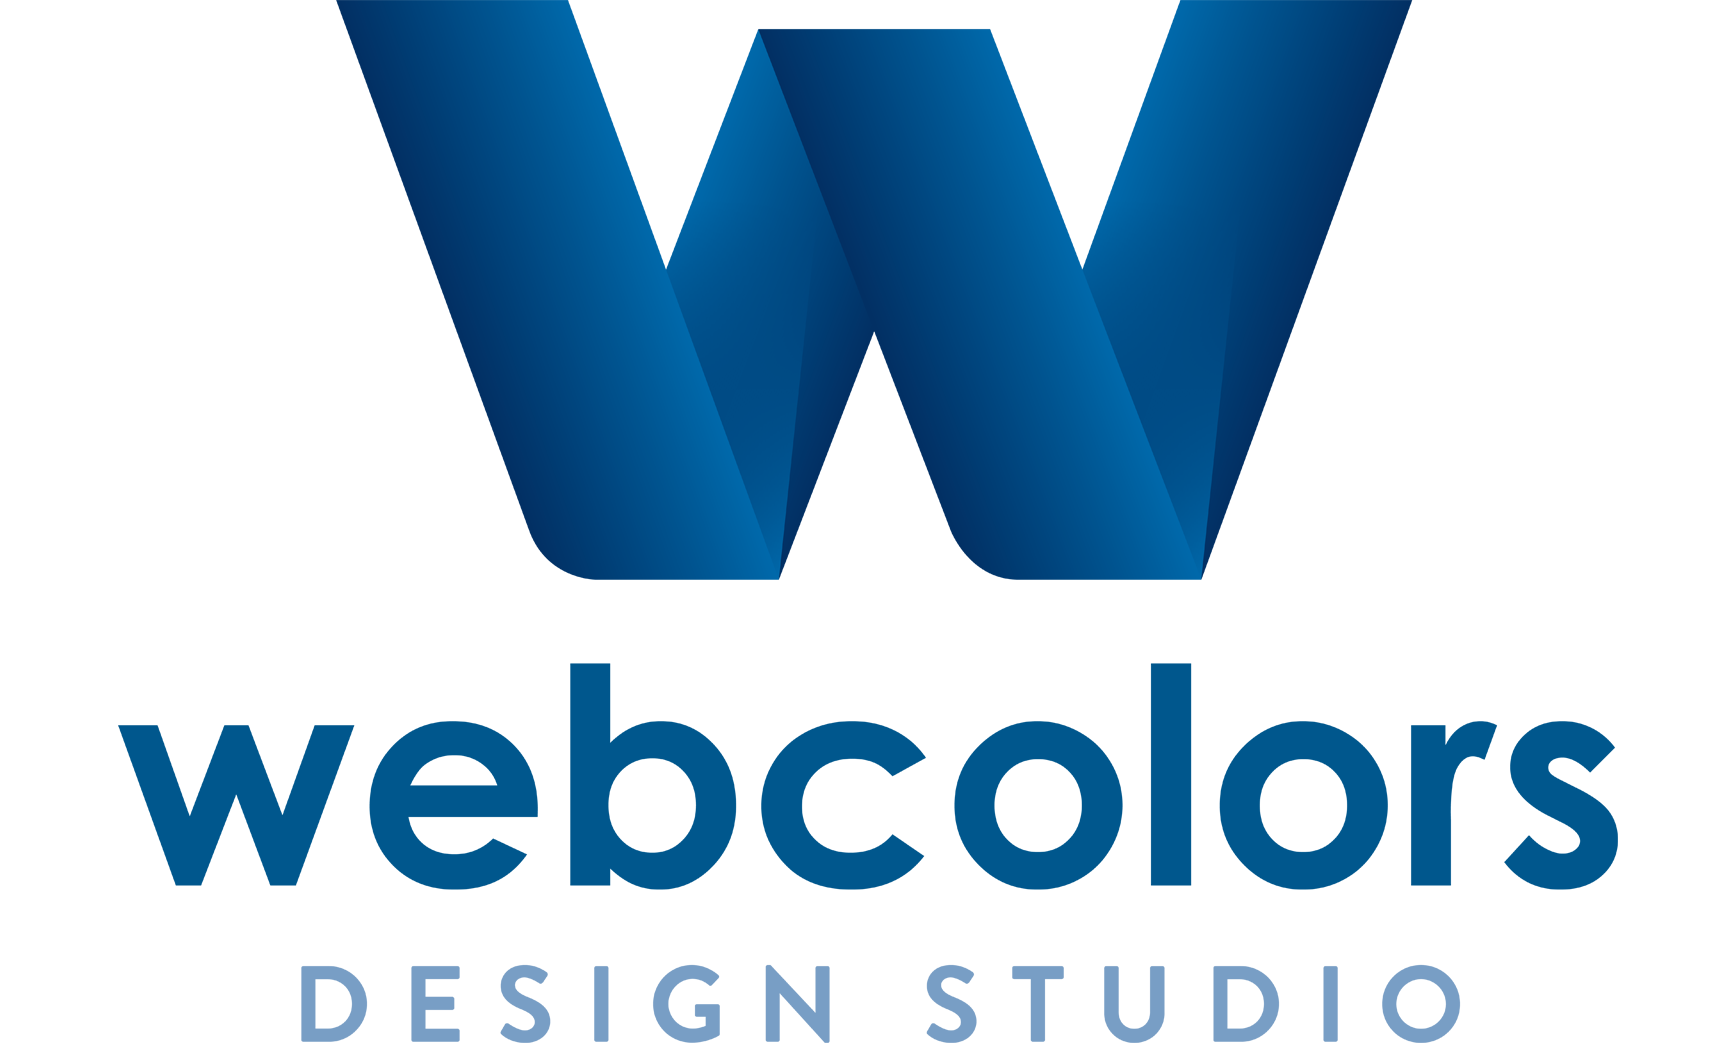 Webcolors Design Studio - Digitalagentur mit erstklassigen Marketing- und Printservices.